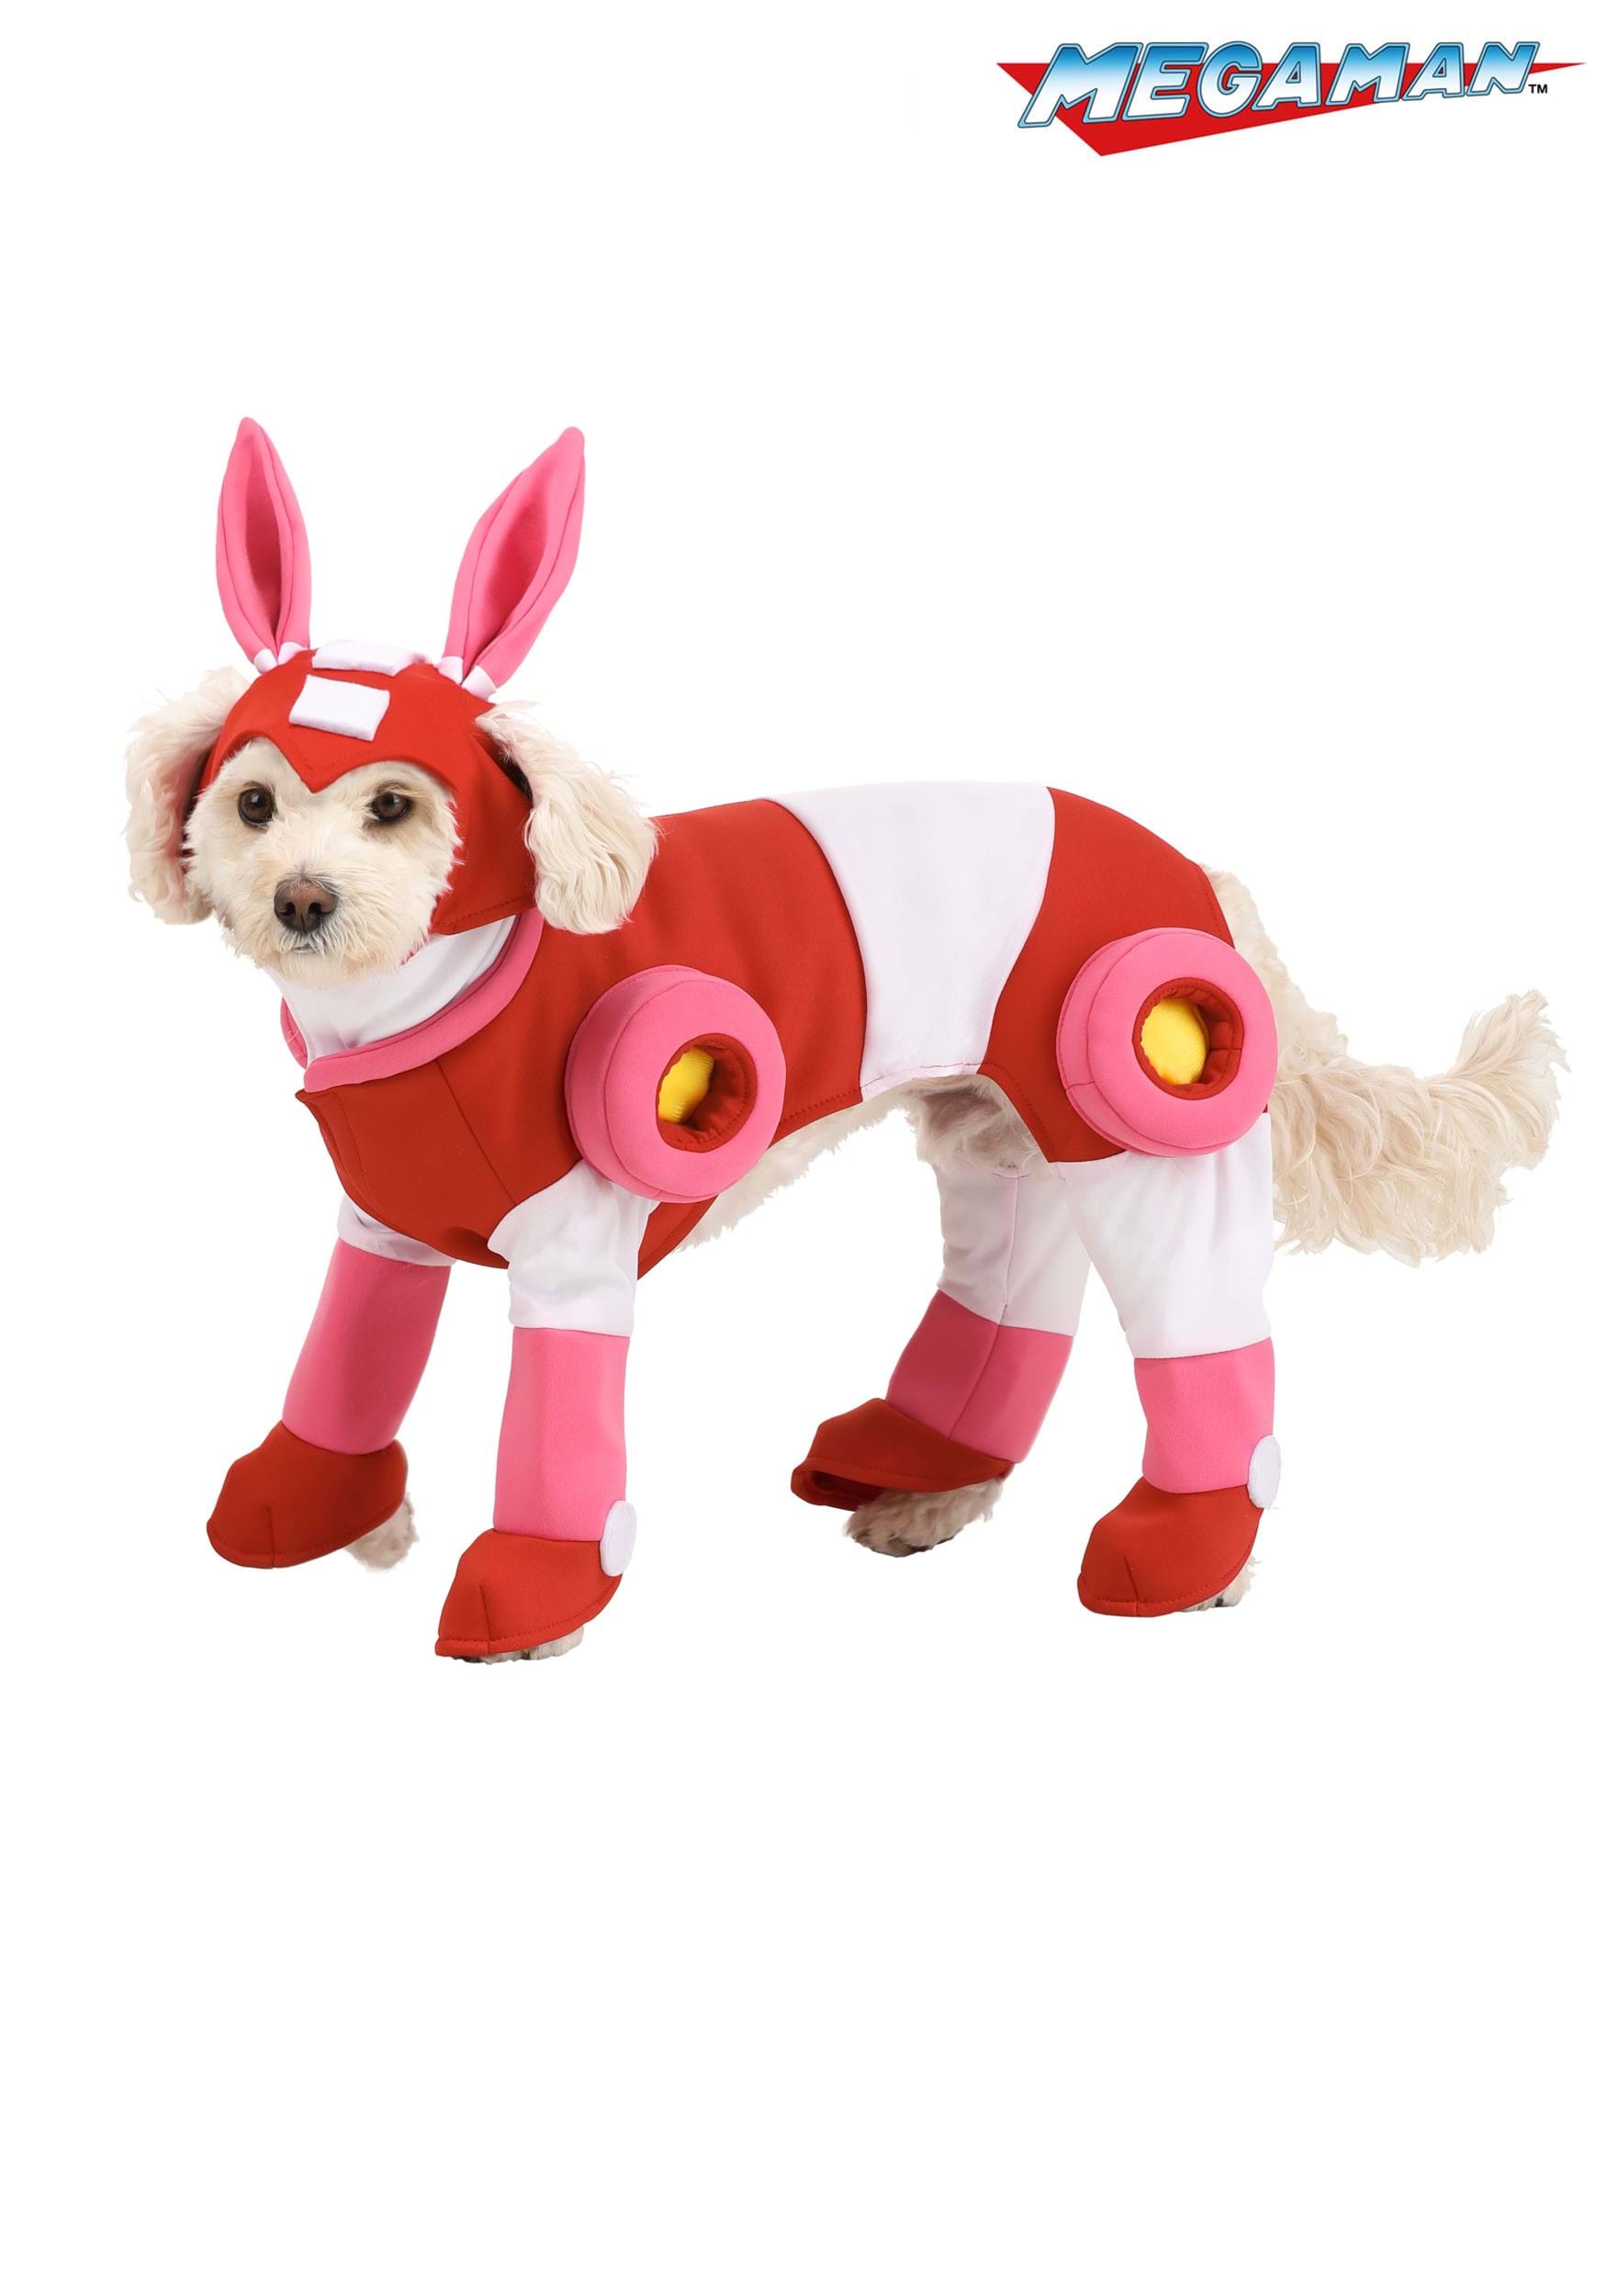 Mega Man Rush Pet Costume for Dogs